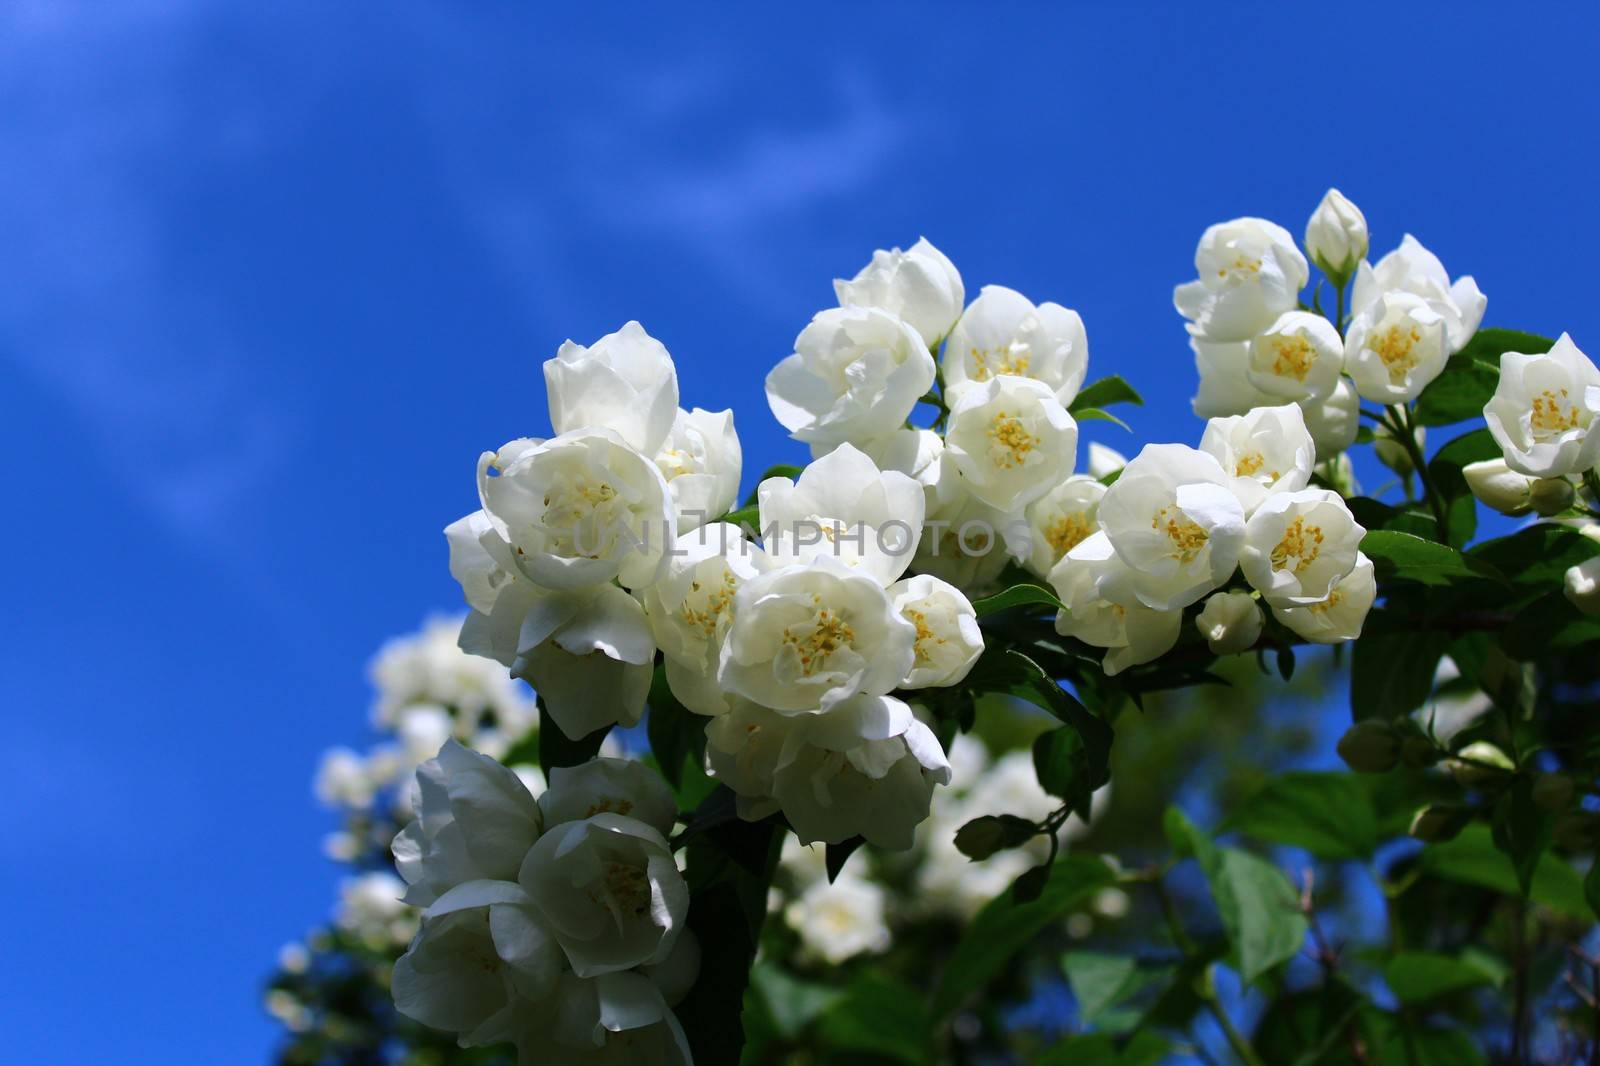 white jasmine in the garden by martina_unbehauen